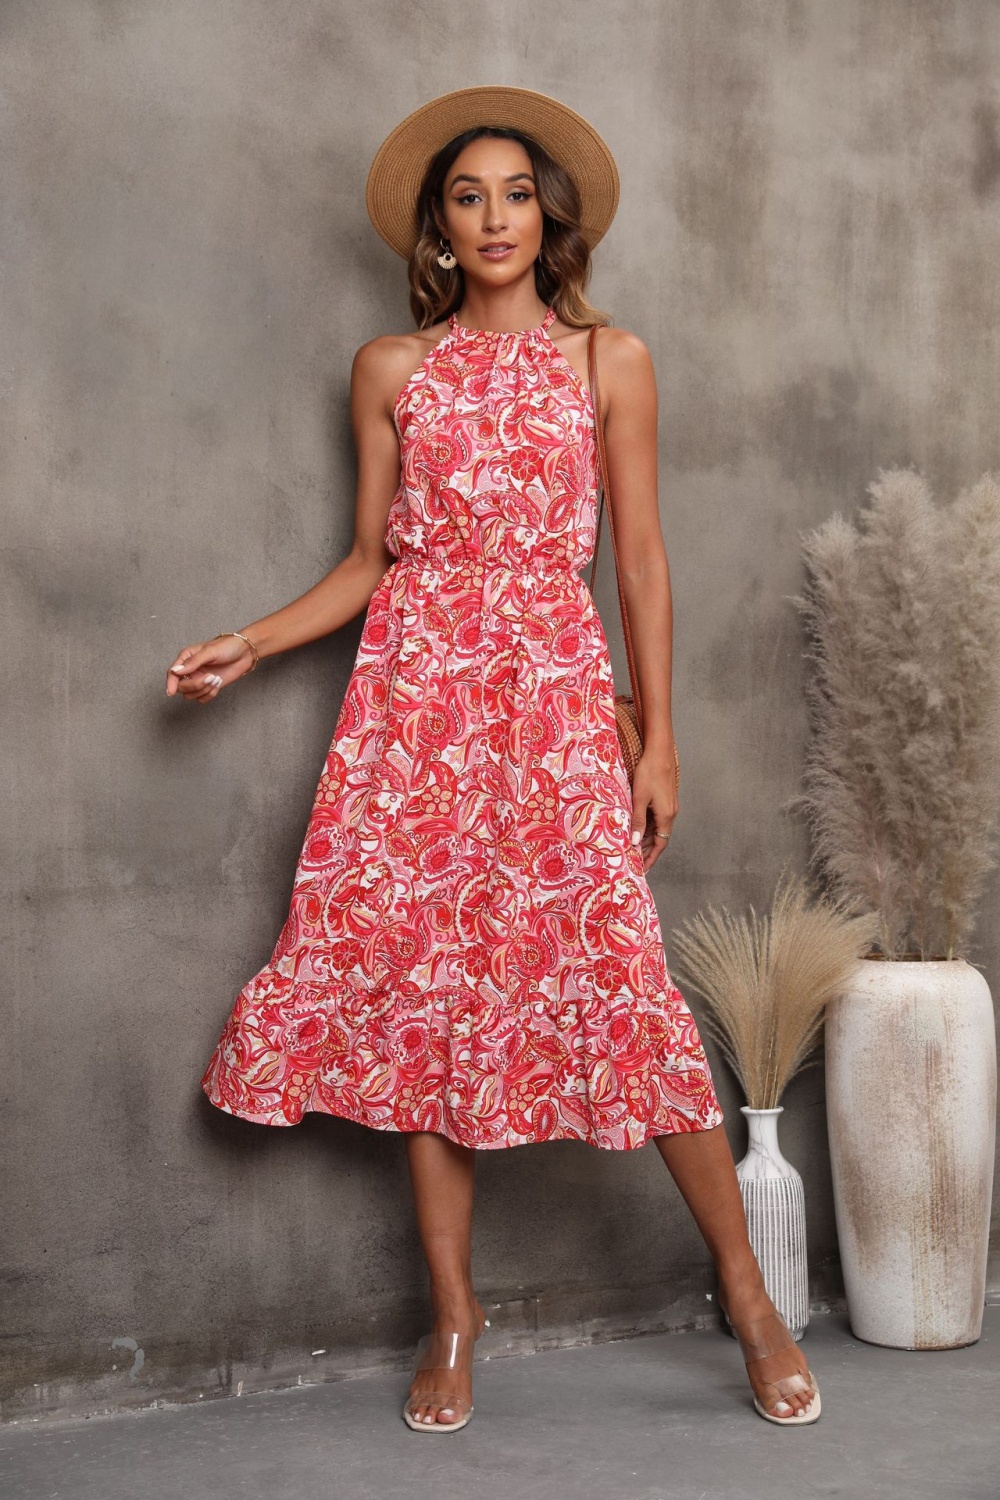 Sleeveless spring and summer halter dress for women